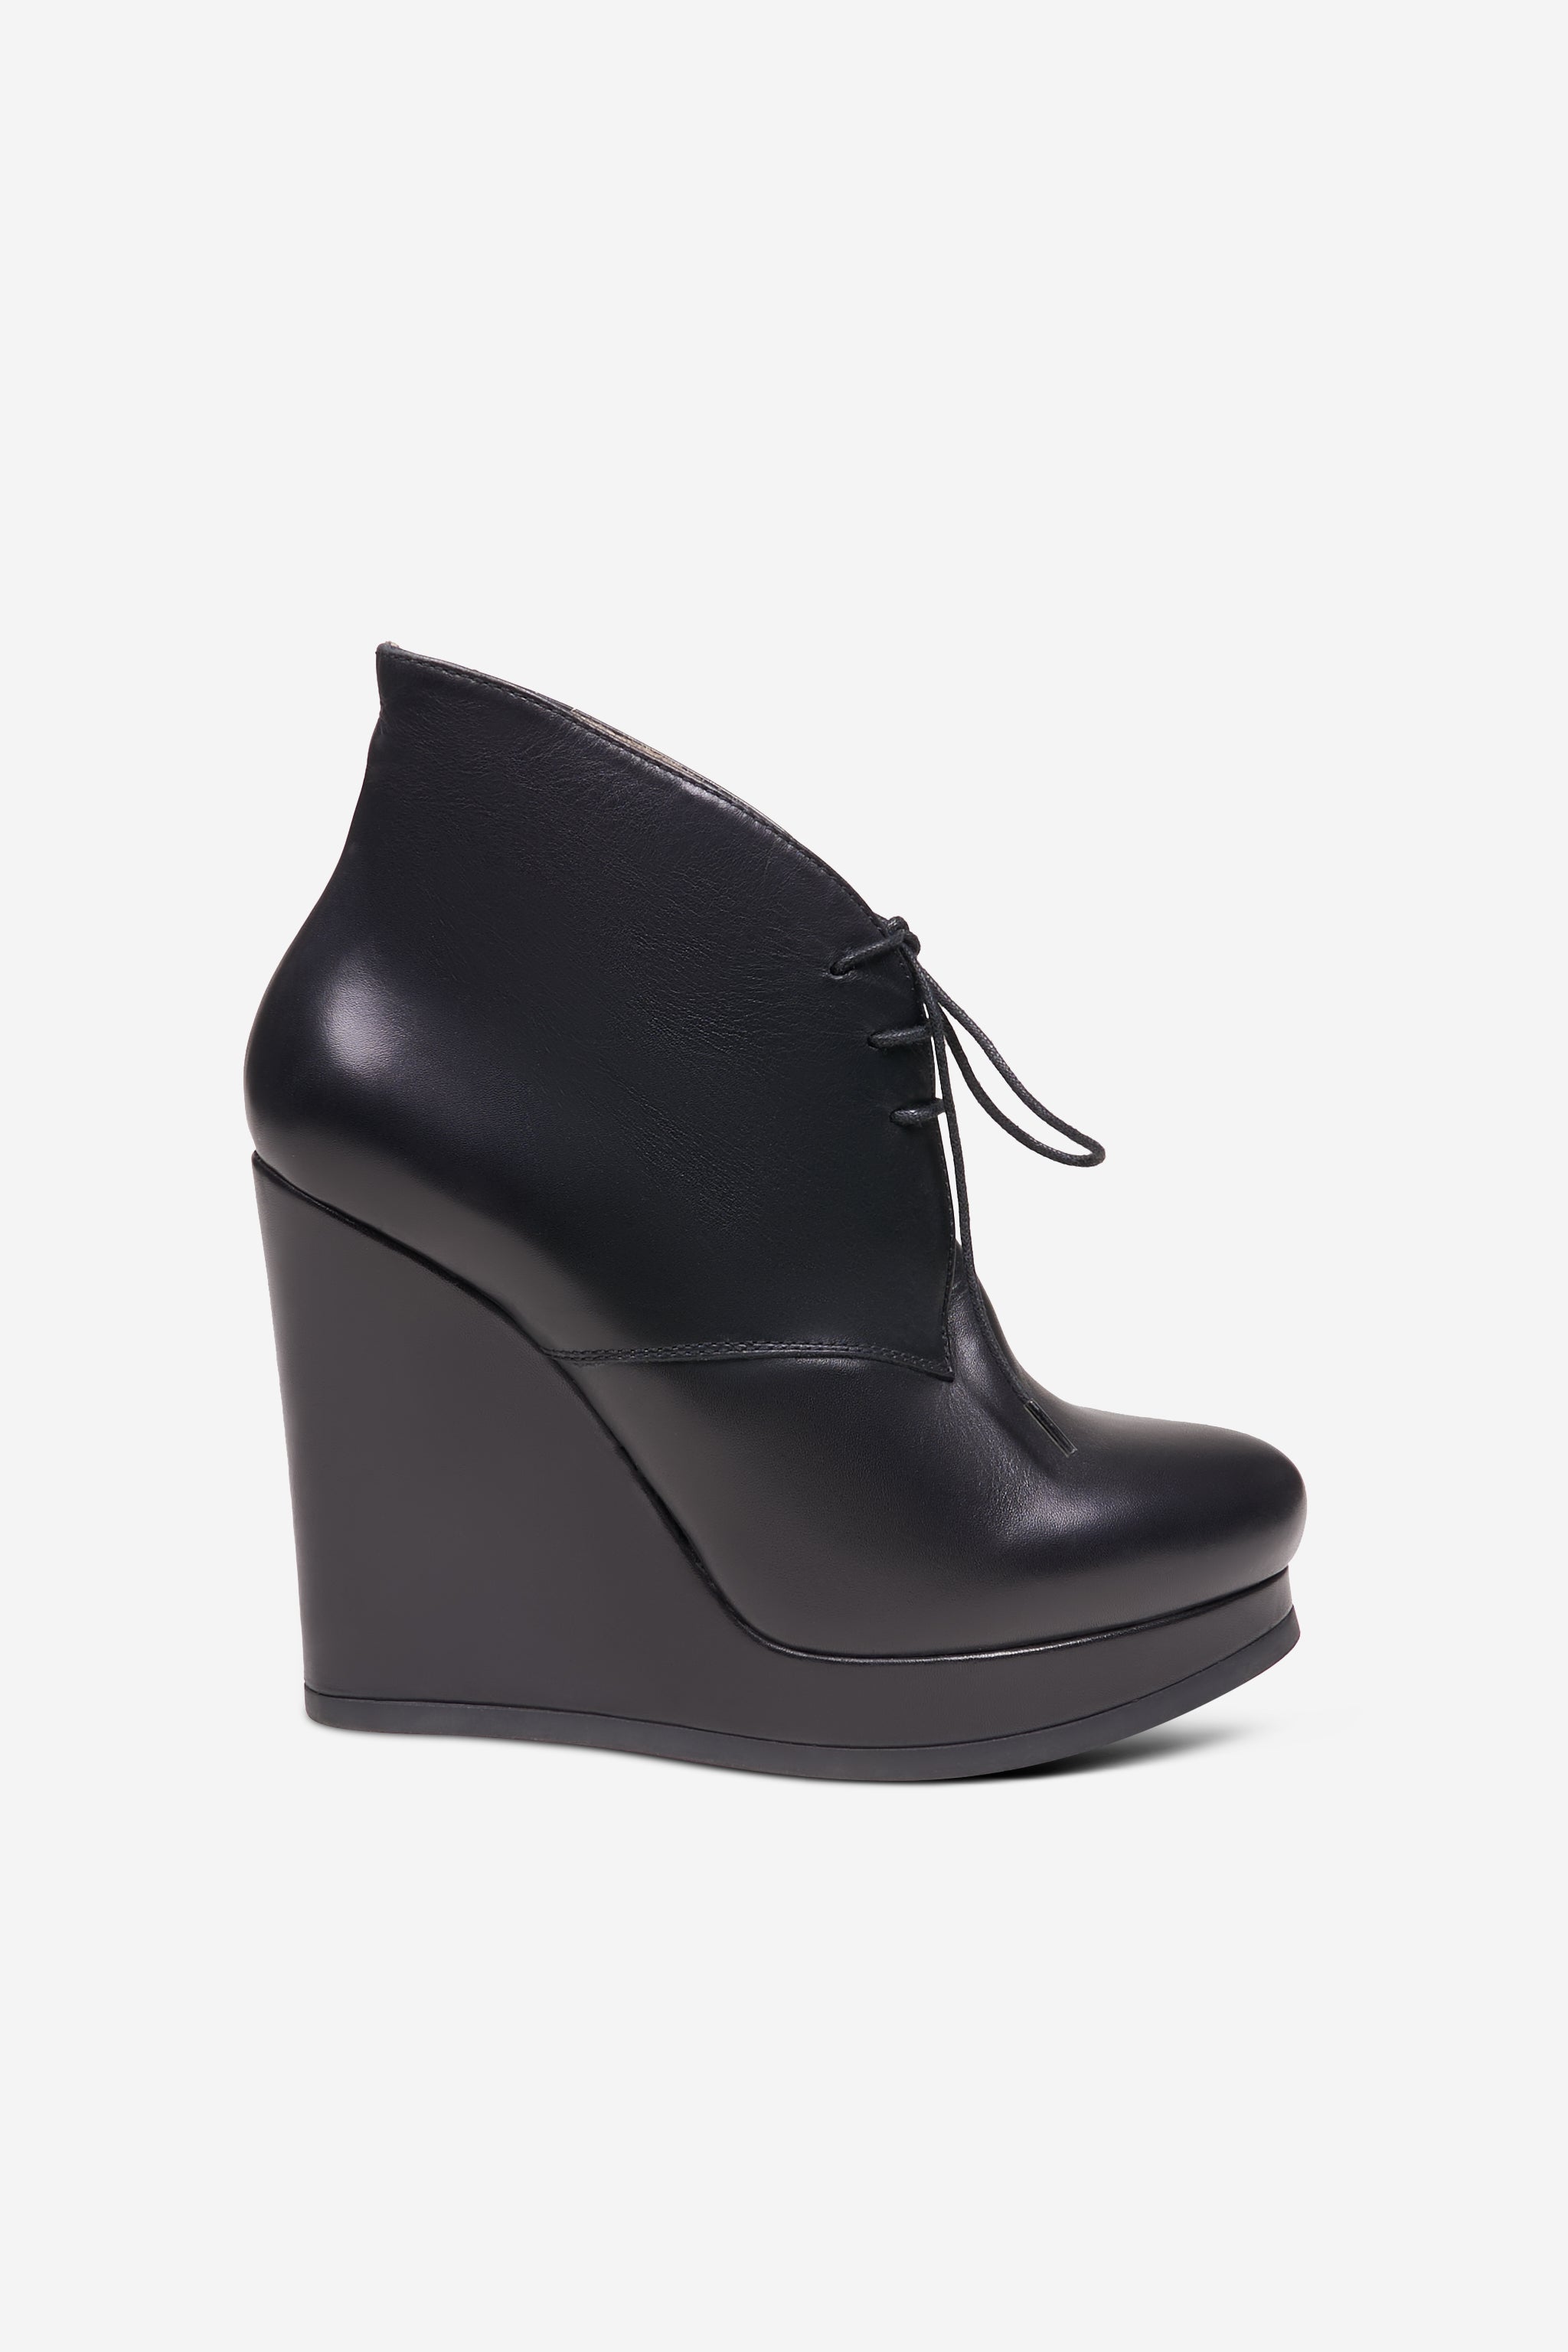 Black wedge heel shoes